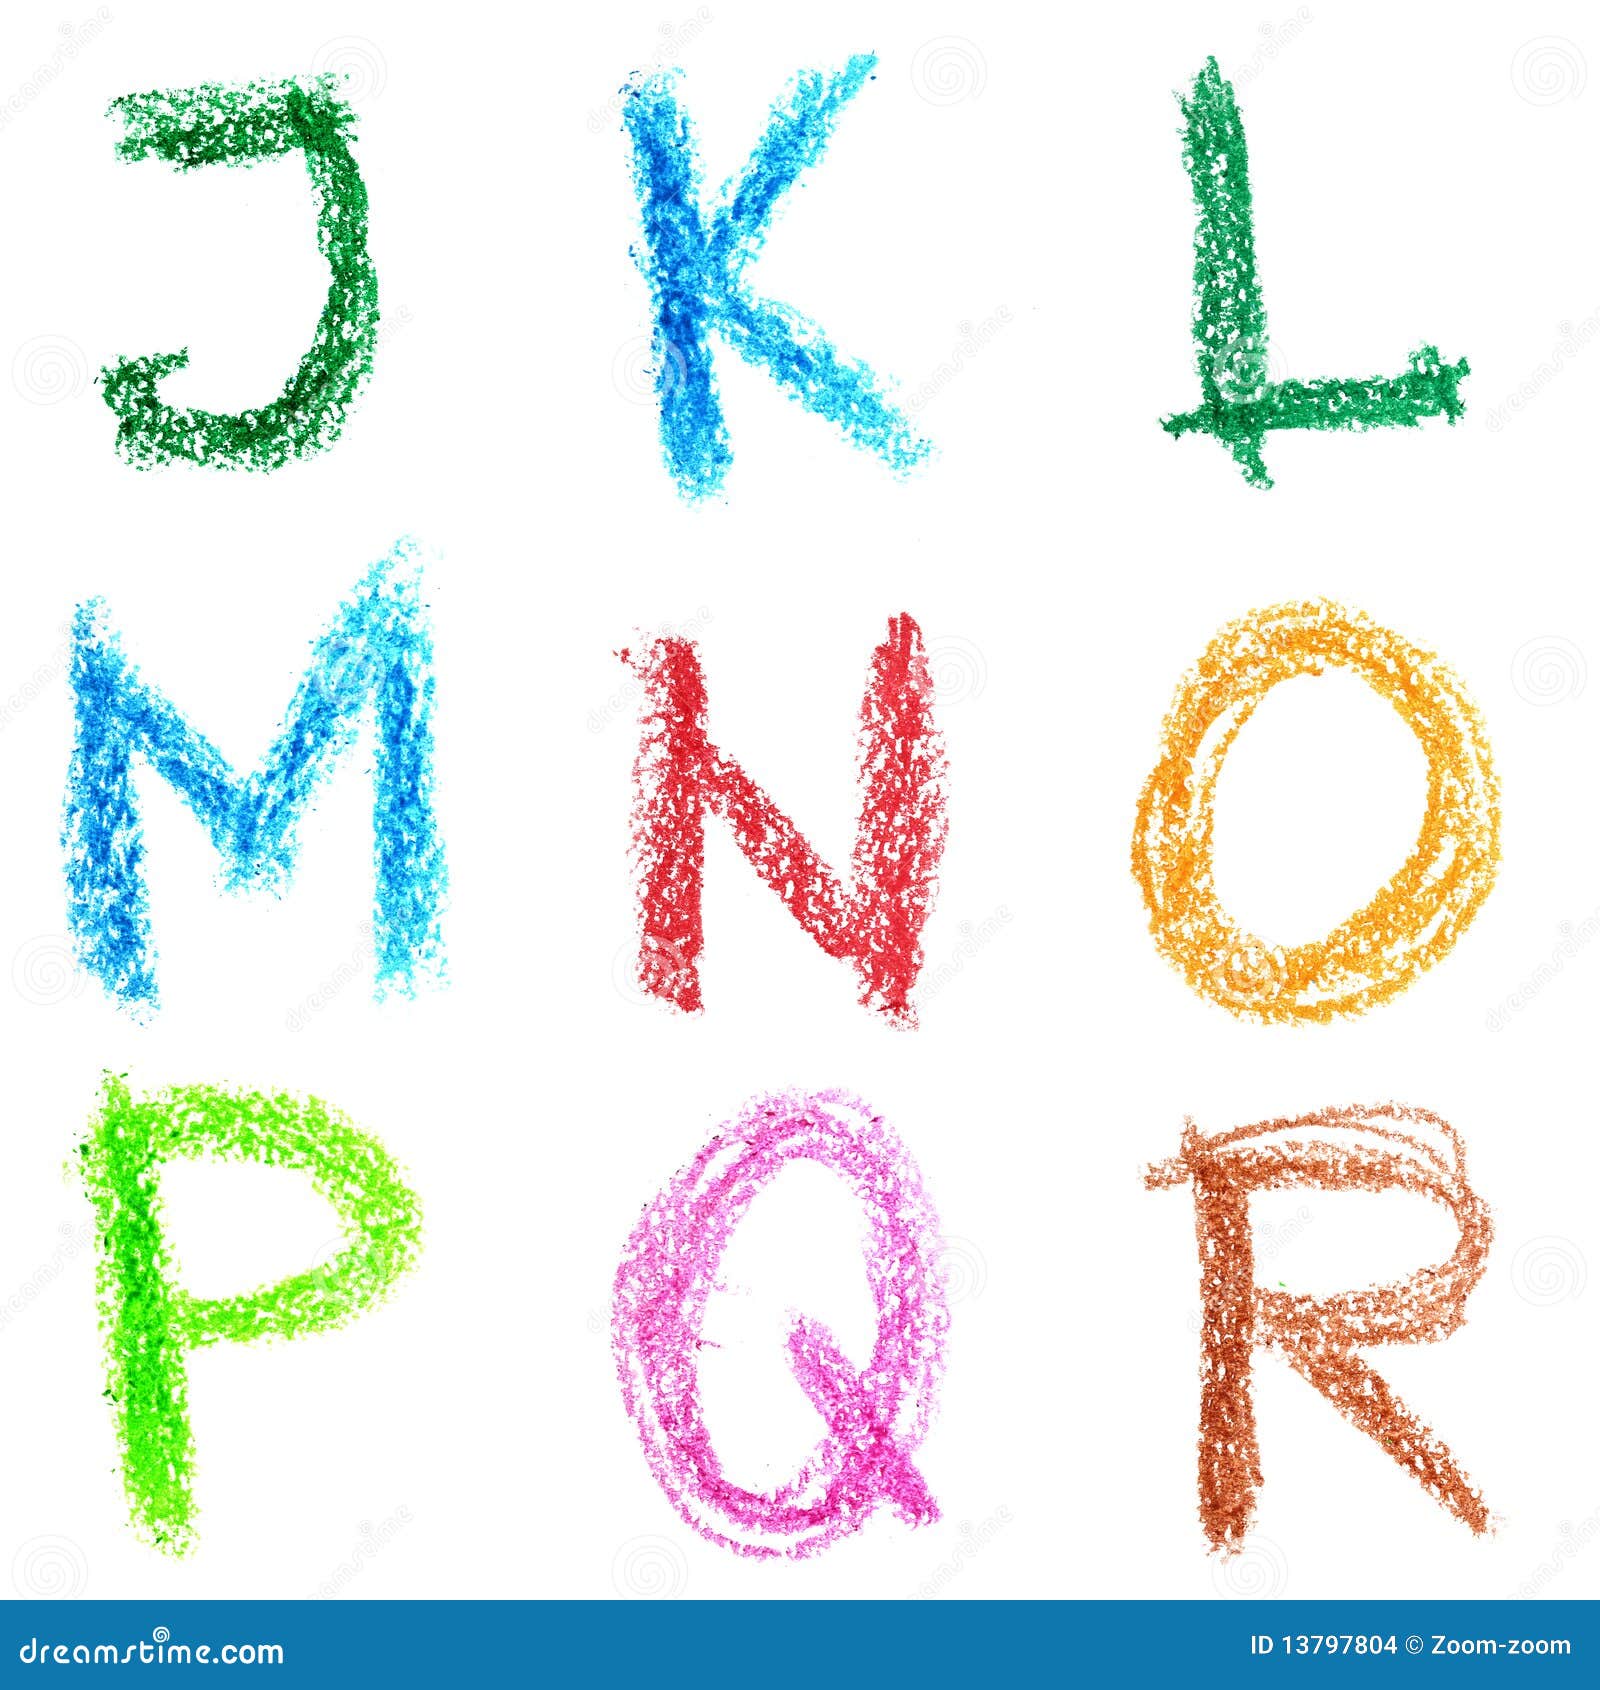 crayon alphabet, lettrs j - r